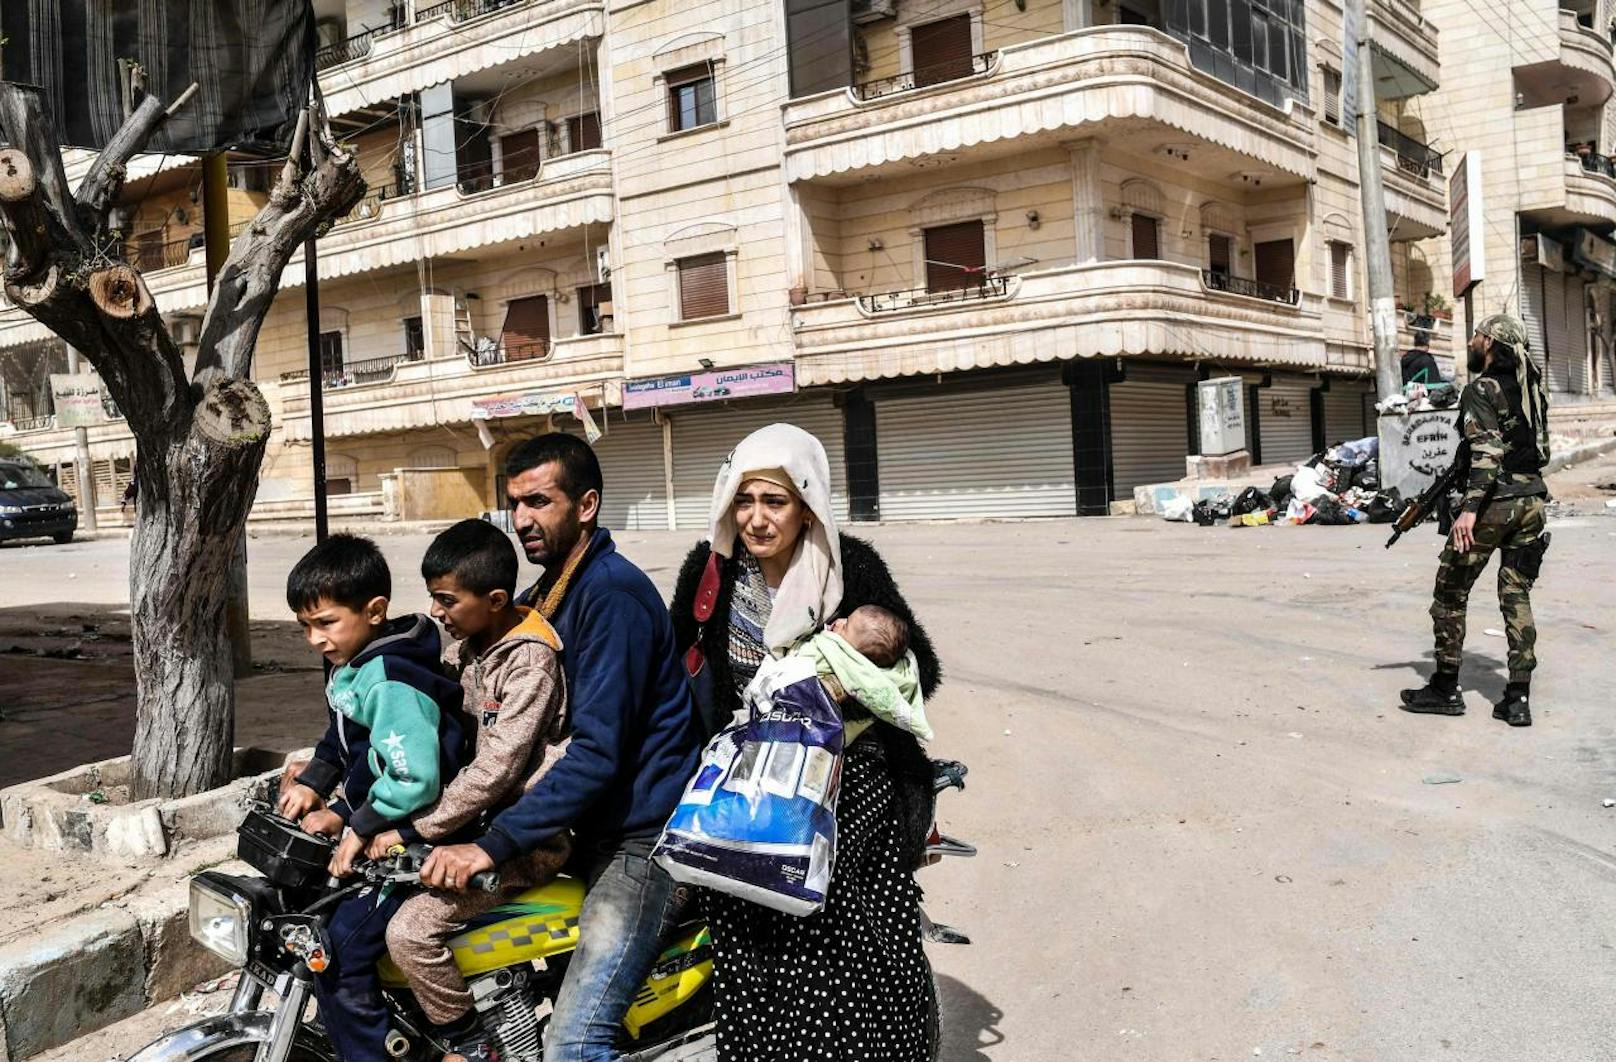 Zahlreiche Bewohner flüchteten vor Bomben und Kämpfen aus der Stadt. Viele weitere flüchteten auch vor den Drohungen der islamistischen Kämpfer.